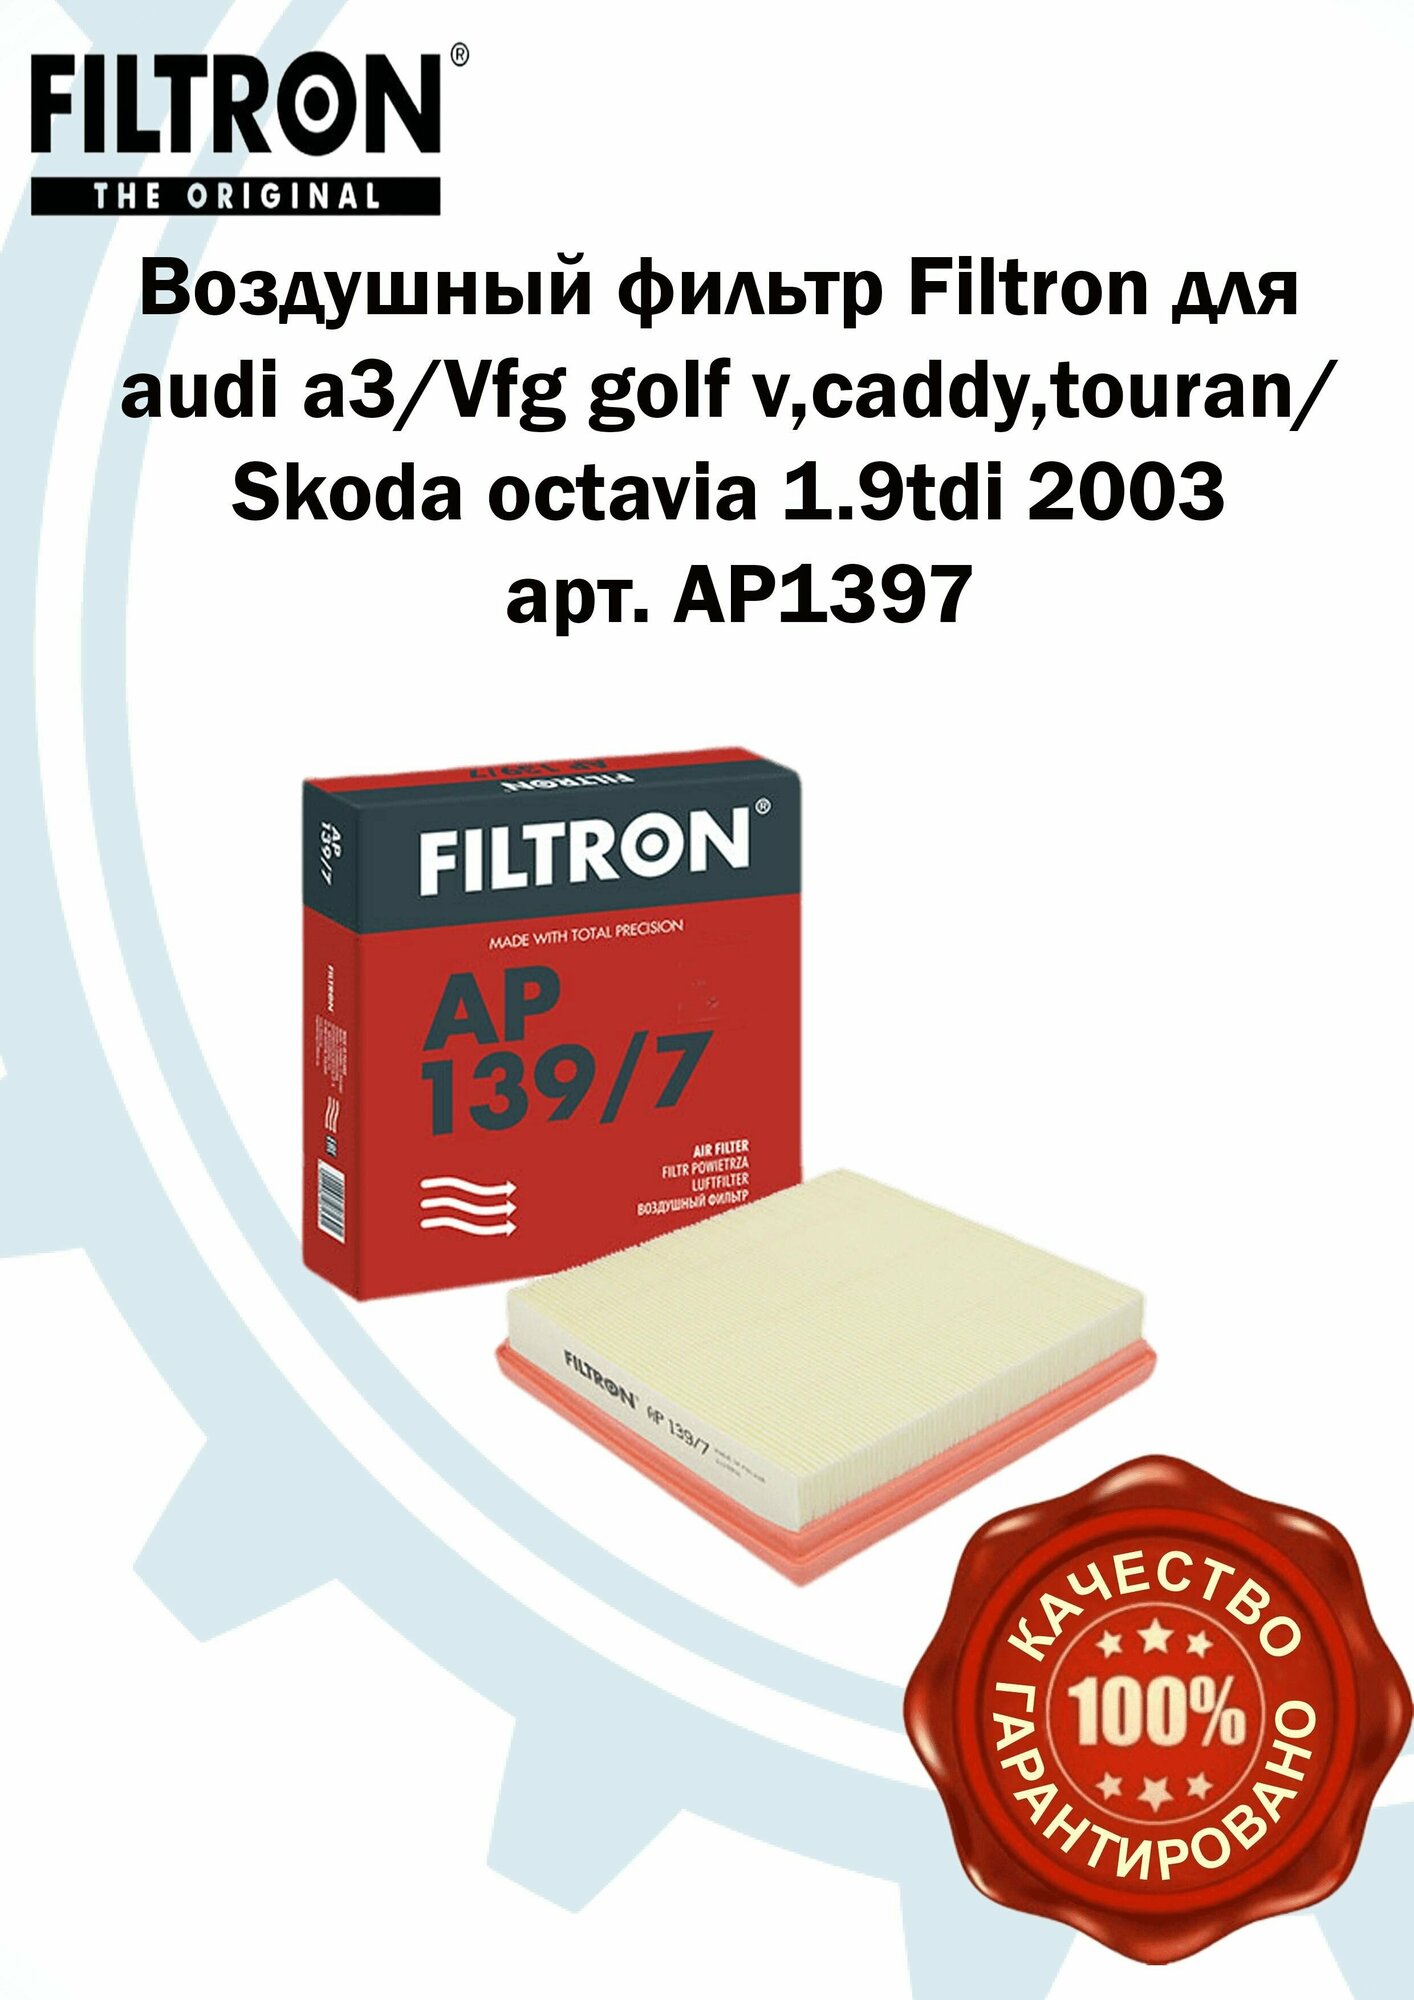 Воздушный фильтр двигателя Filtron для audi a3/Vfg golf v, caddy, touran/Skoda octavia 1.9tdi 2003 арт. AP1397